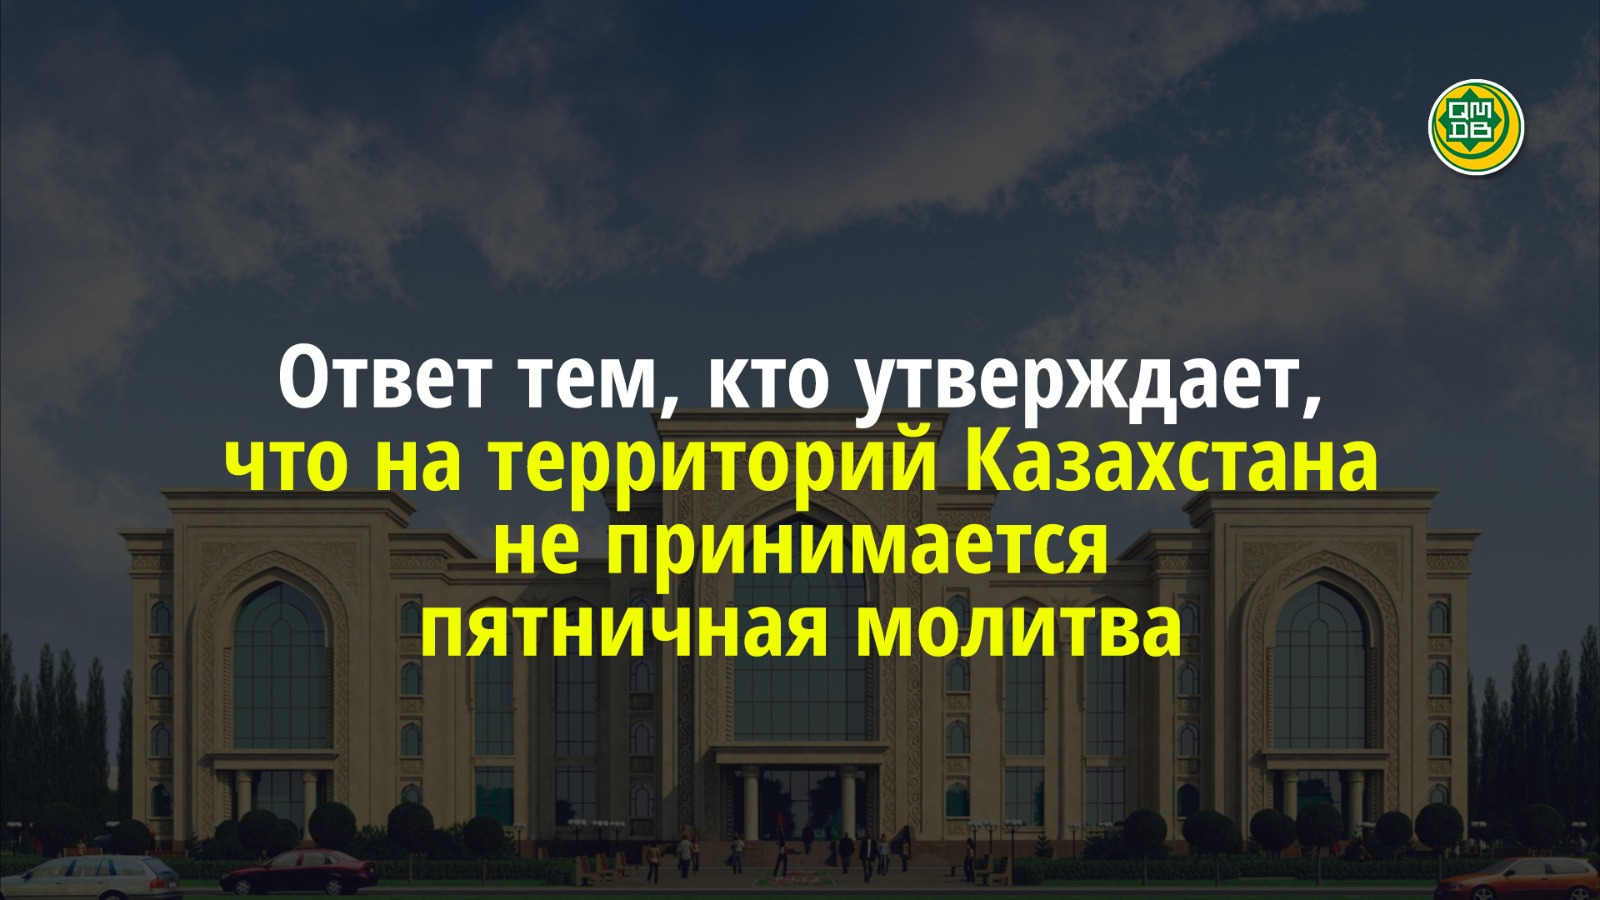 Ответ тем, кто утверждает, что на территории Казахстана не принимается пятничная молитва